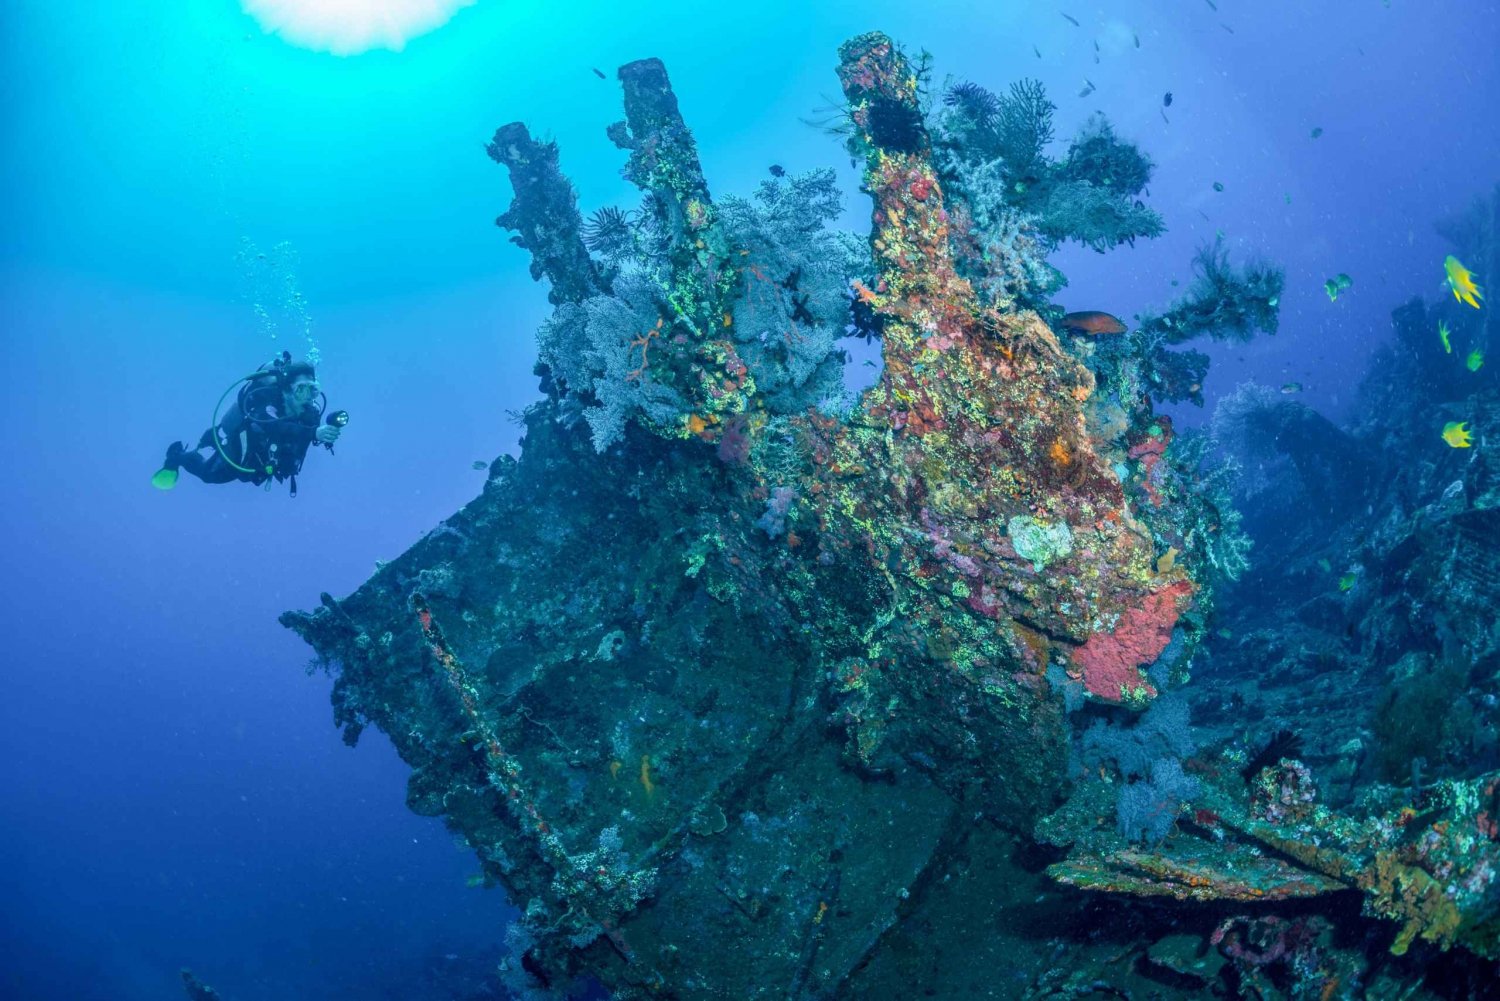 Bali: Tulamben Bay and the USAT Liberty Wreck Dive